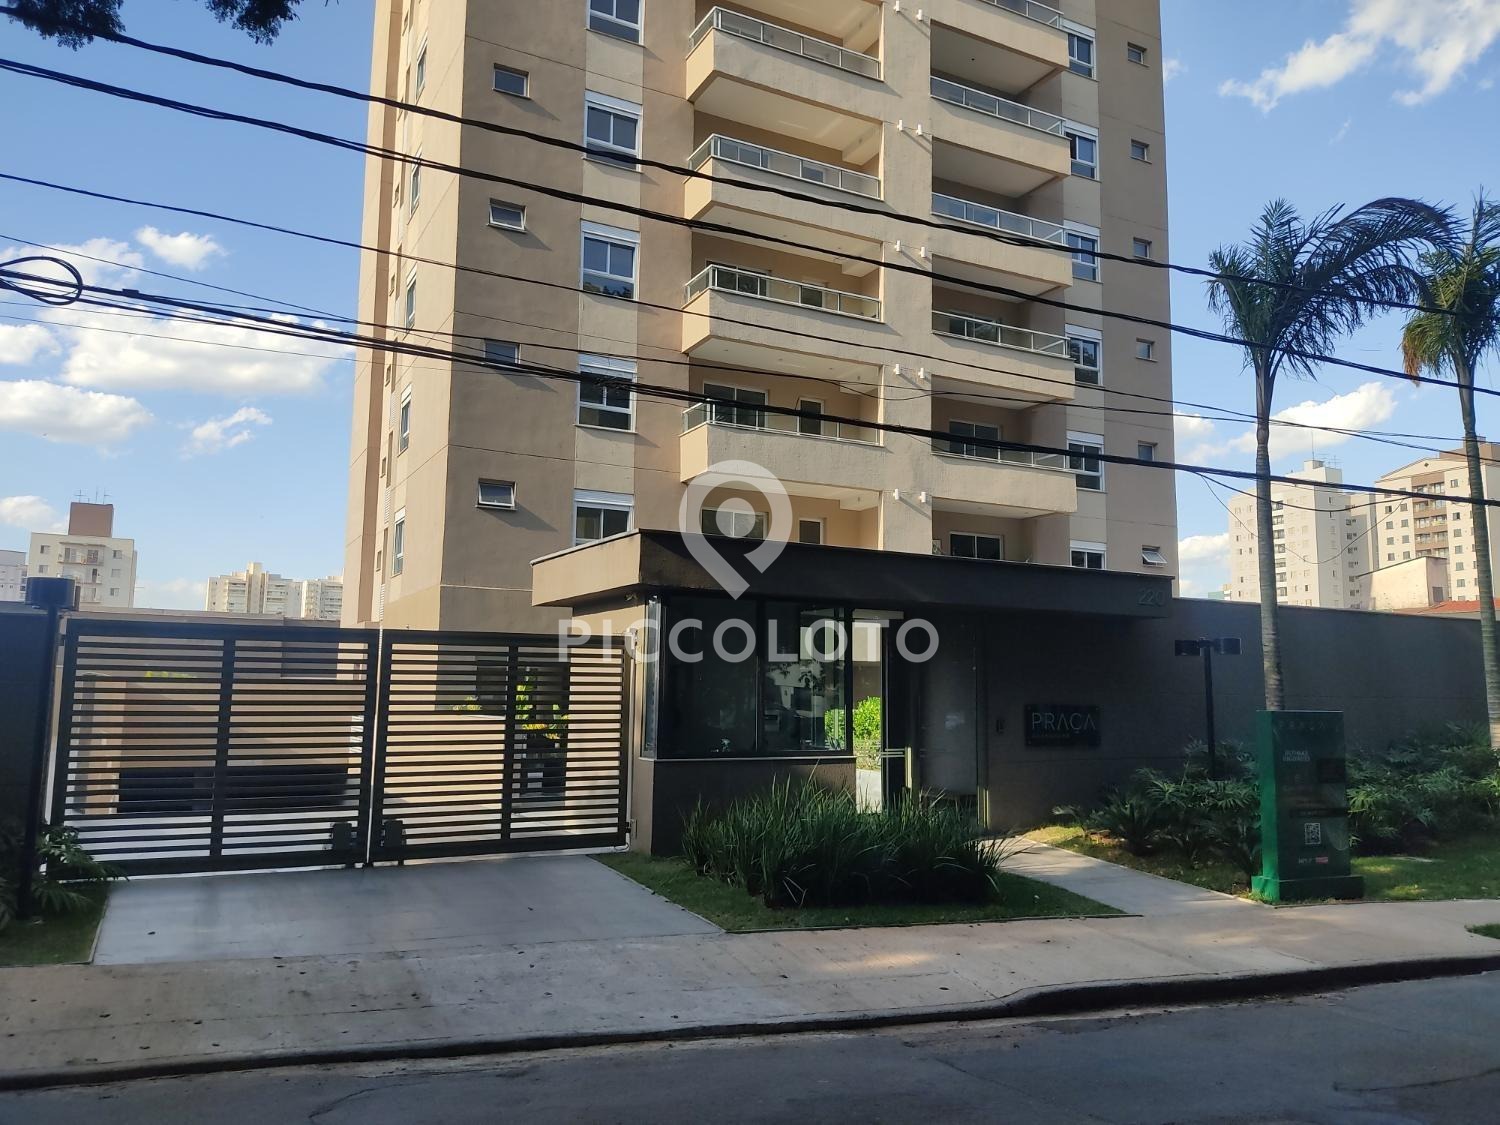 Piccoloto - Apartamento à venda no Jardim Brasil em Campinas